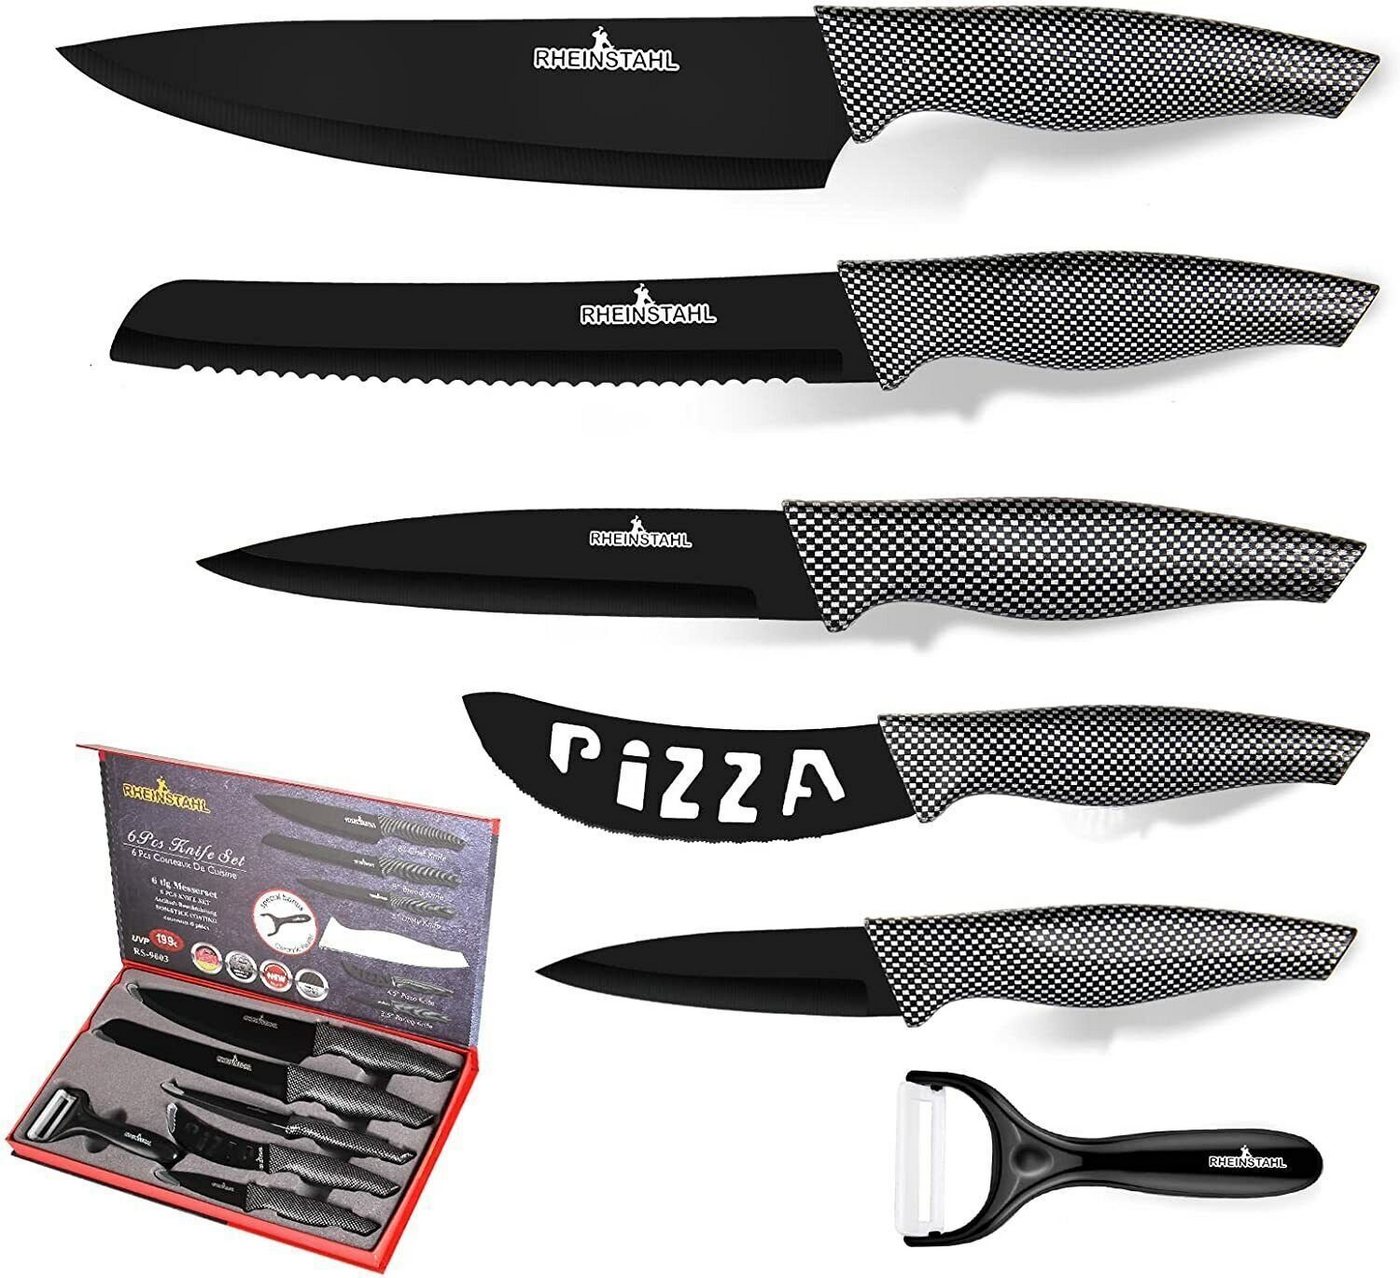 RHEINSTAHL Messer-Set 6-teilig- Edelstahl küchenmesser set mit Geschenkbox, Edelstahl + Antihaft, Profi knife set Messerset inkl. Schäler von RHEINSTAHL